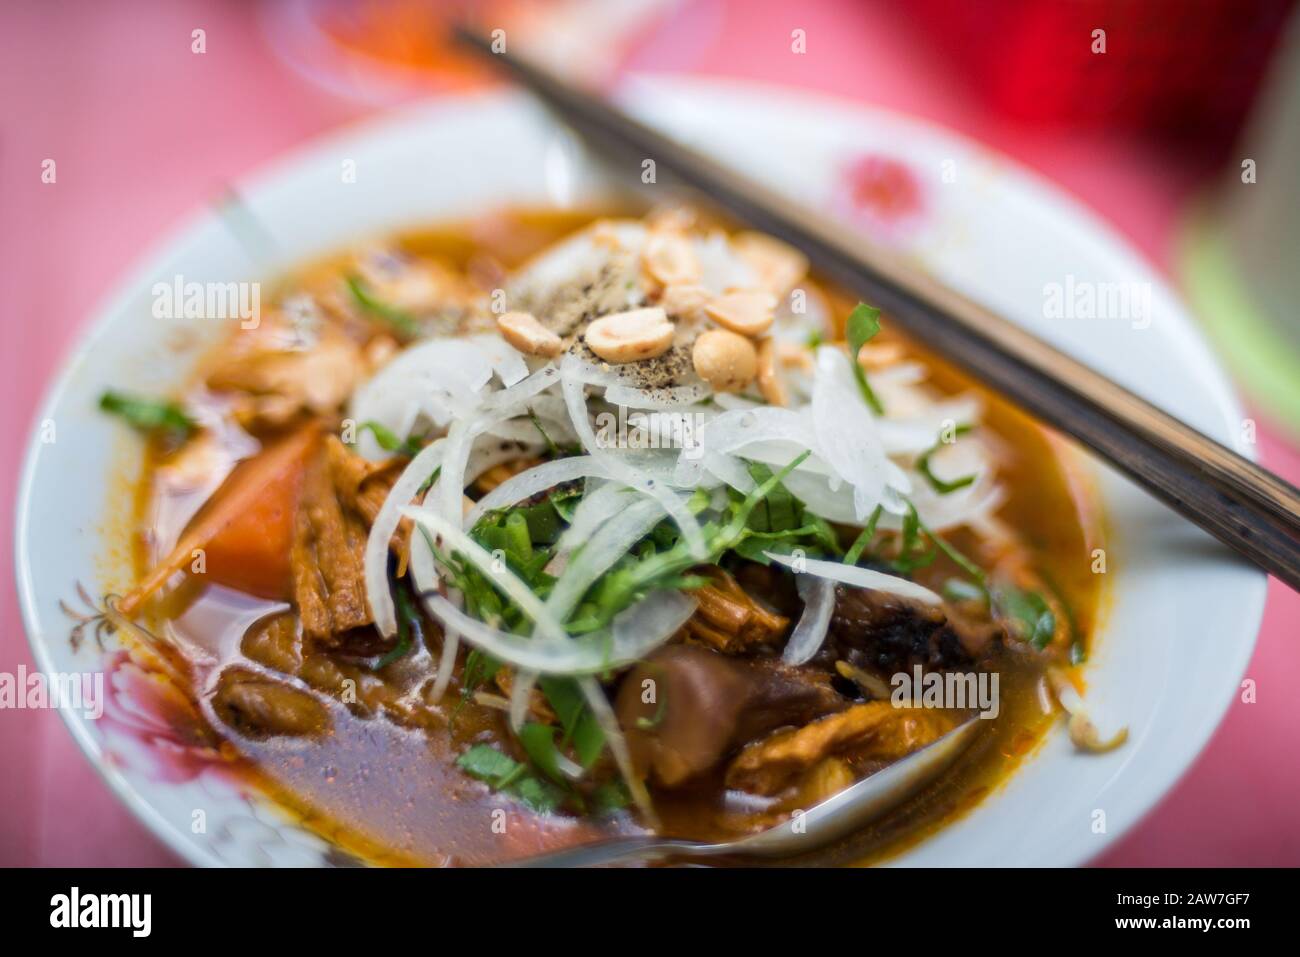 Nahaufnahme der traditionellen vietnamesischen Pho-Suppe in einer Schüssel mit Holzstäbchen. Authentische vietnamesische Küche in der Nähe Stockfoto